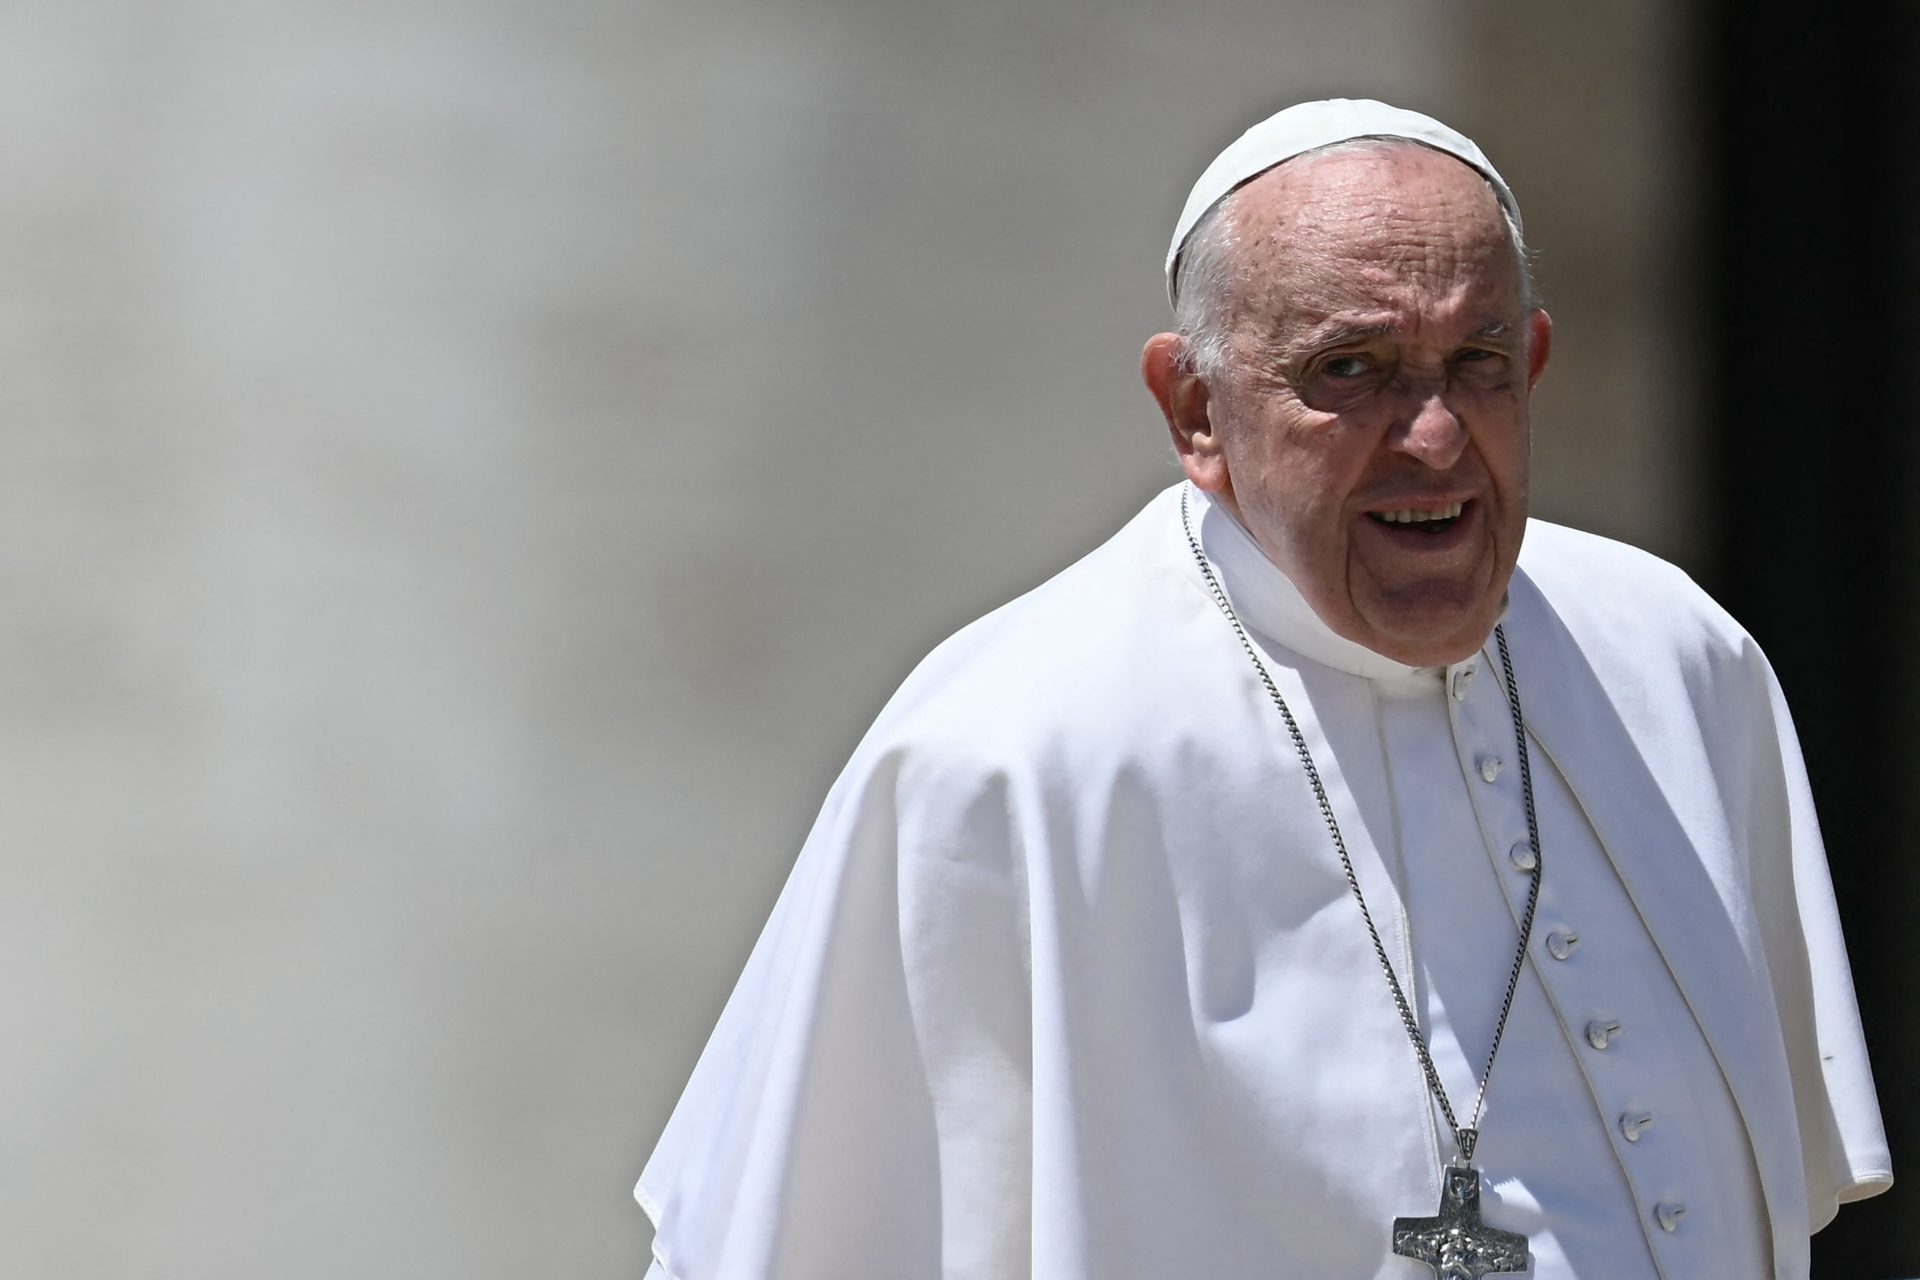 Le pape utilise une insulte homophobe selon les médias italiens